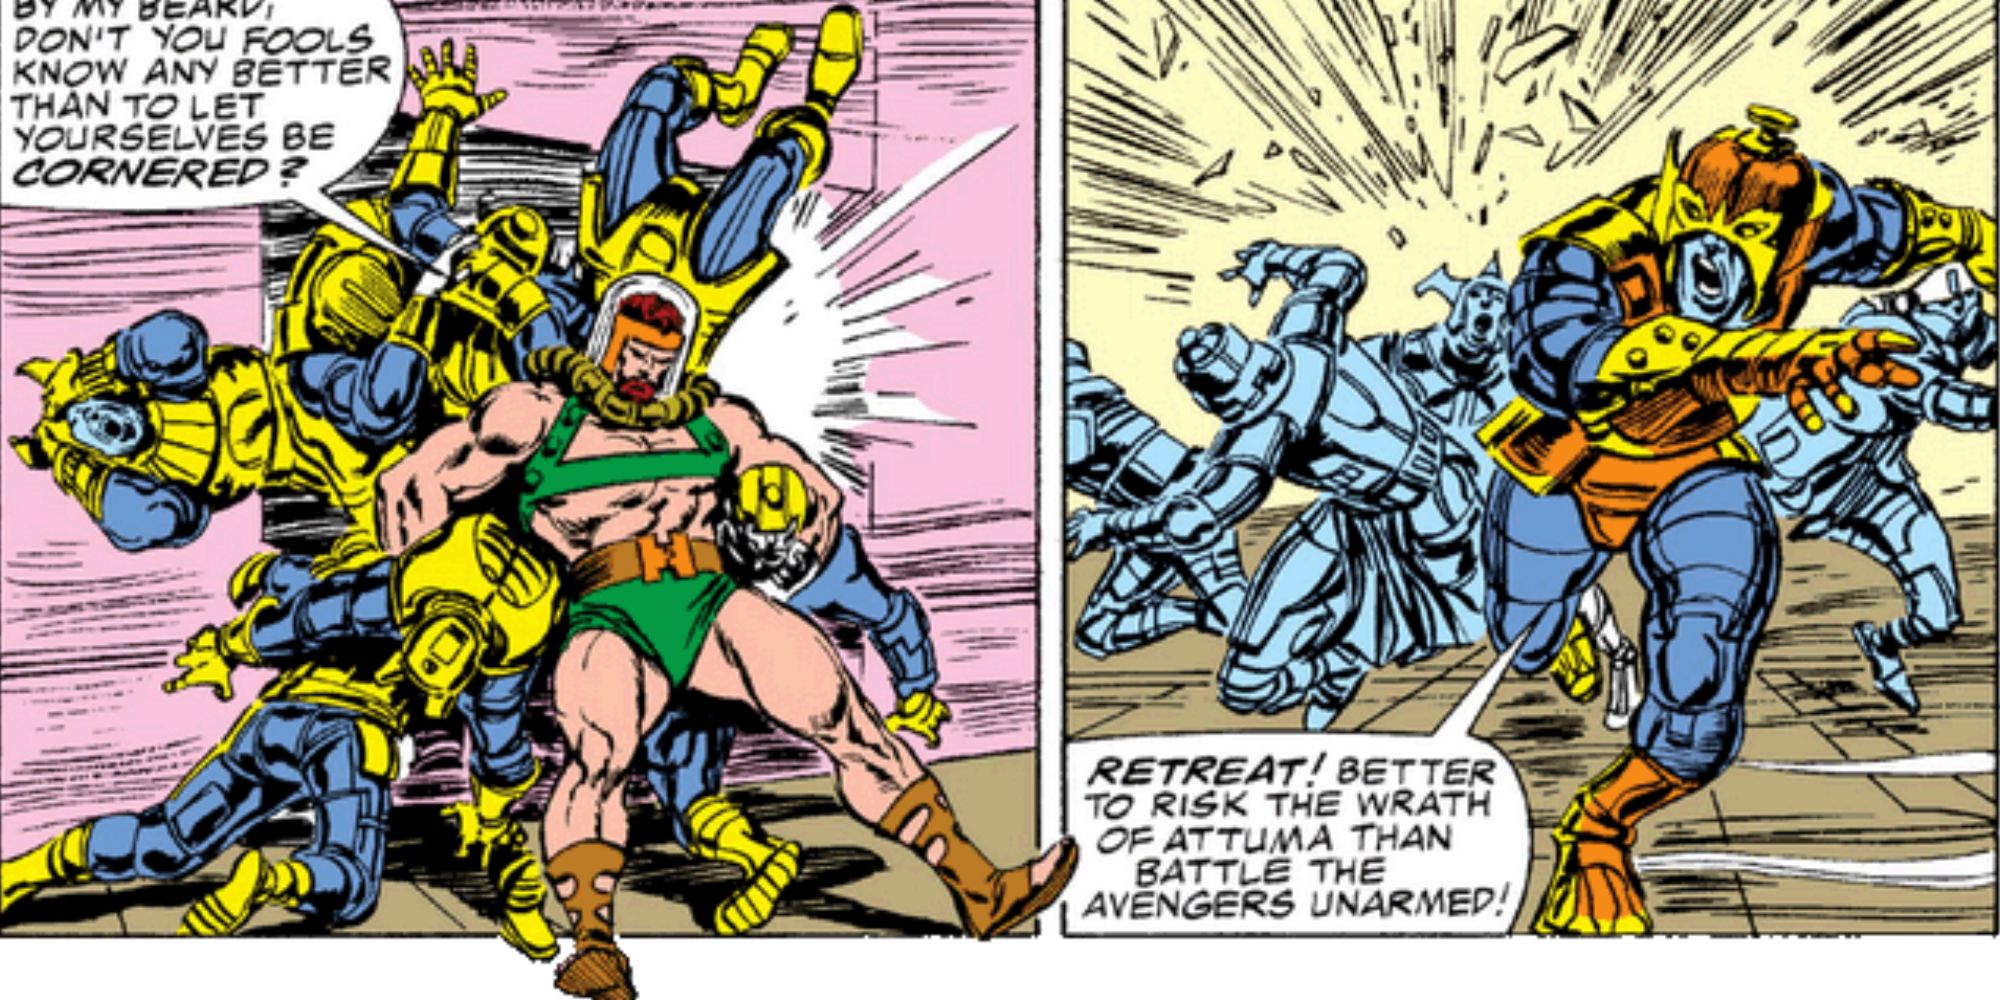 Hercules attacks the Atlanteans in Marvel Comics.